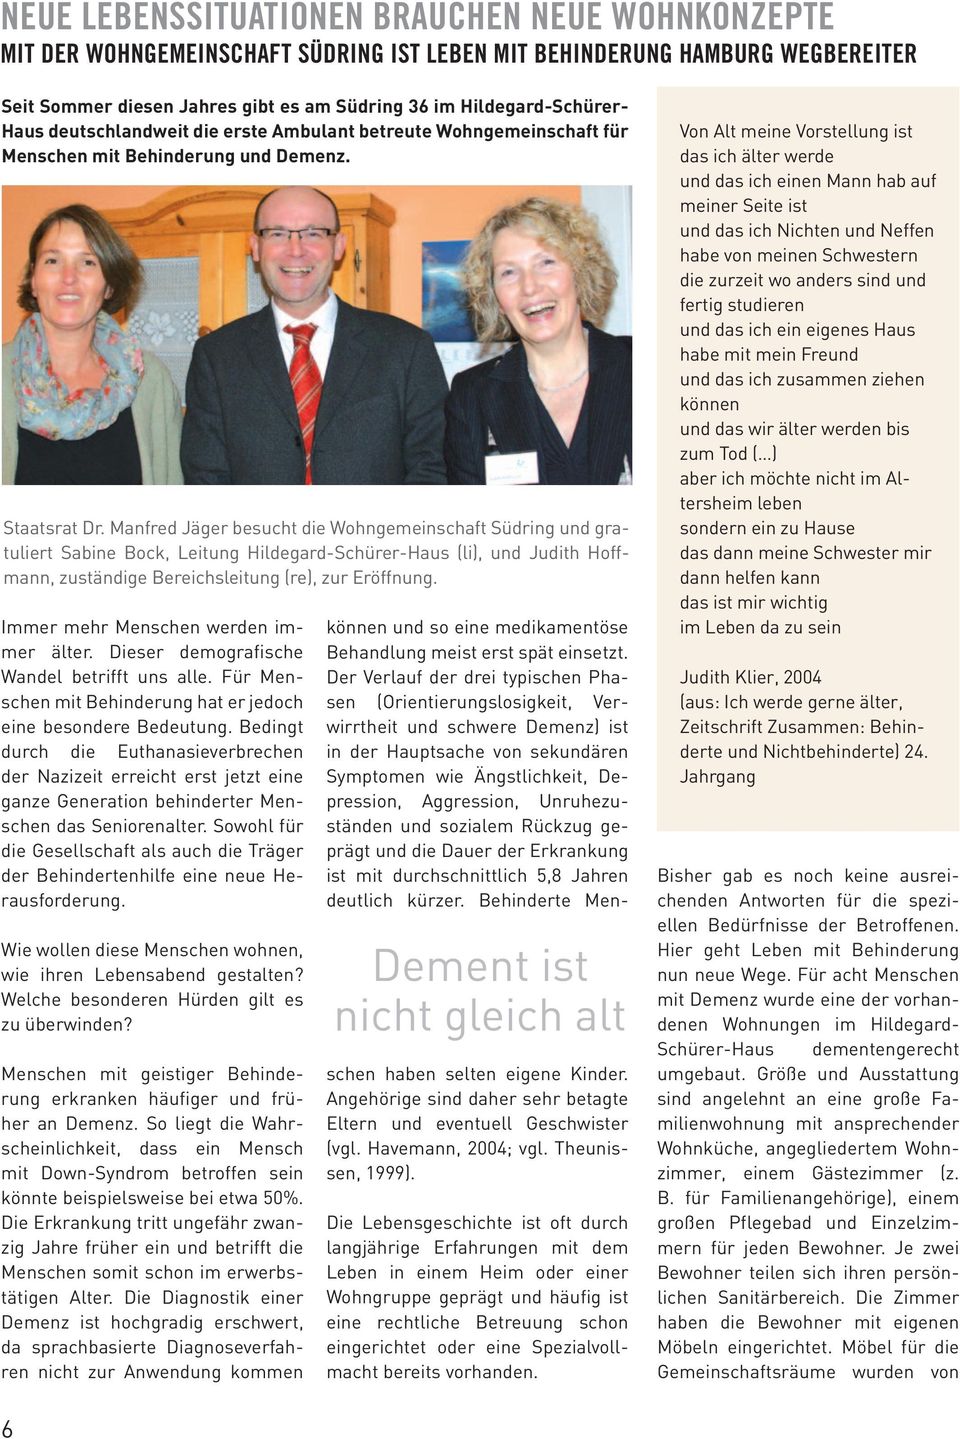 Manfred Jäger besucht die Wohngemeinschaft Südring und gratuliert Sabine Bock, Leitung Hildegard-Schürer-Haus (li), und Judith Hoffmann, zuständige Bereichsleitung (re), zur Eröffnung.